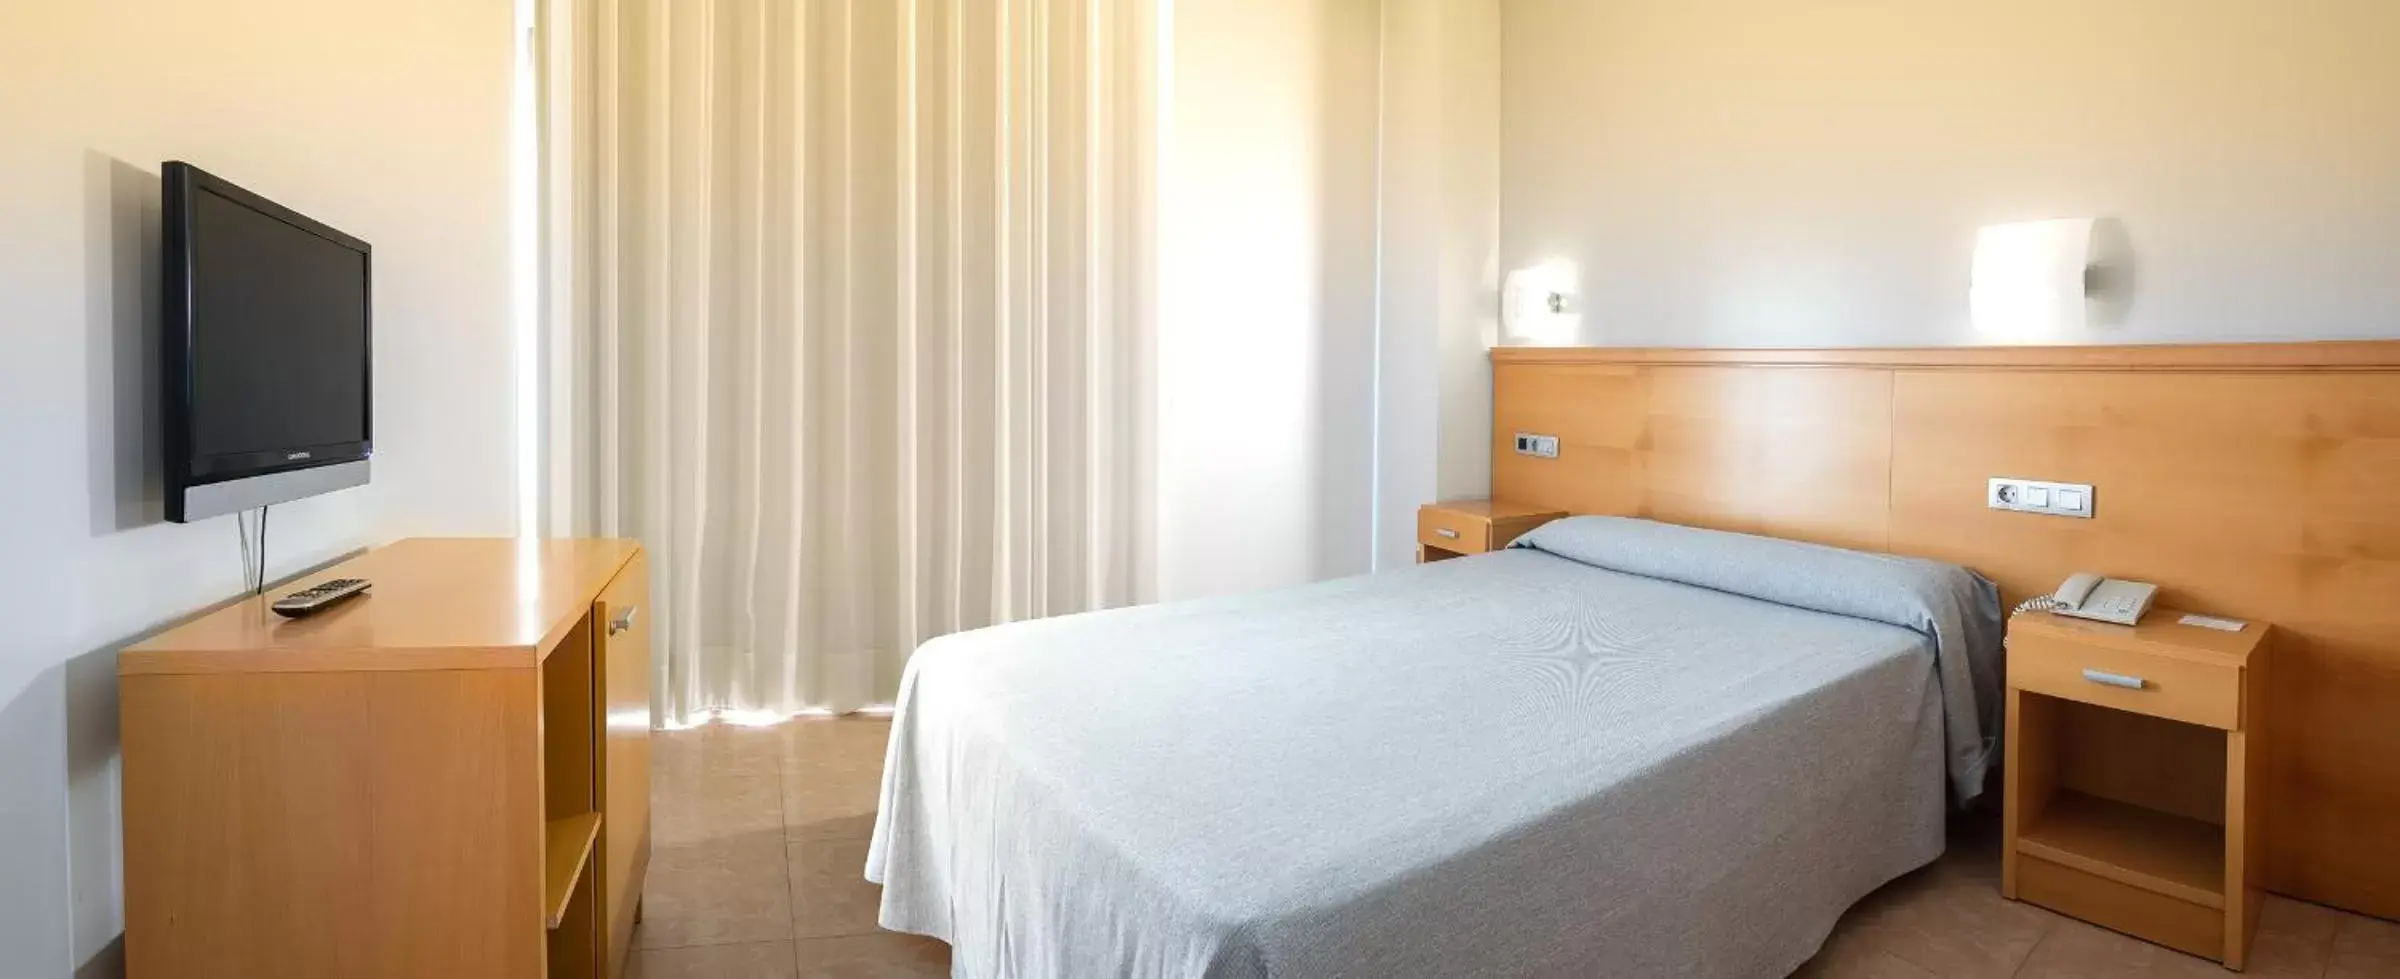 Bedroom, Room Photo in Hotel RH Gijón & Spa